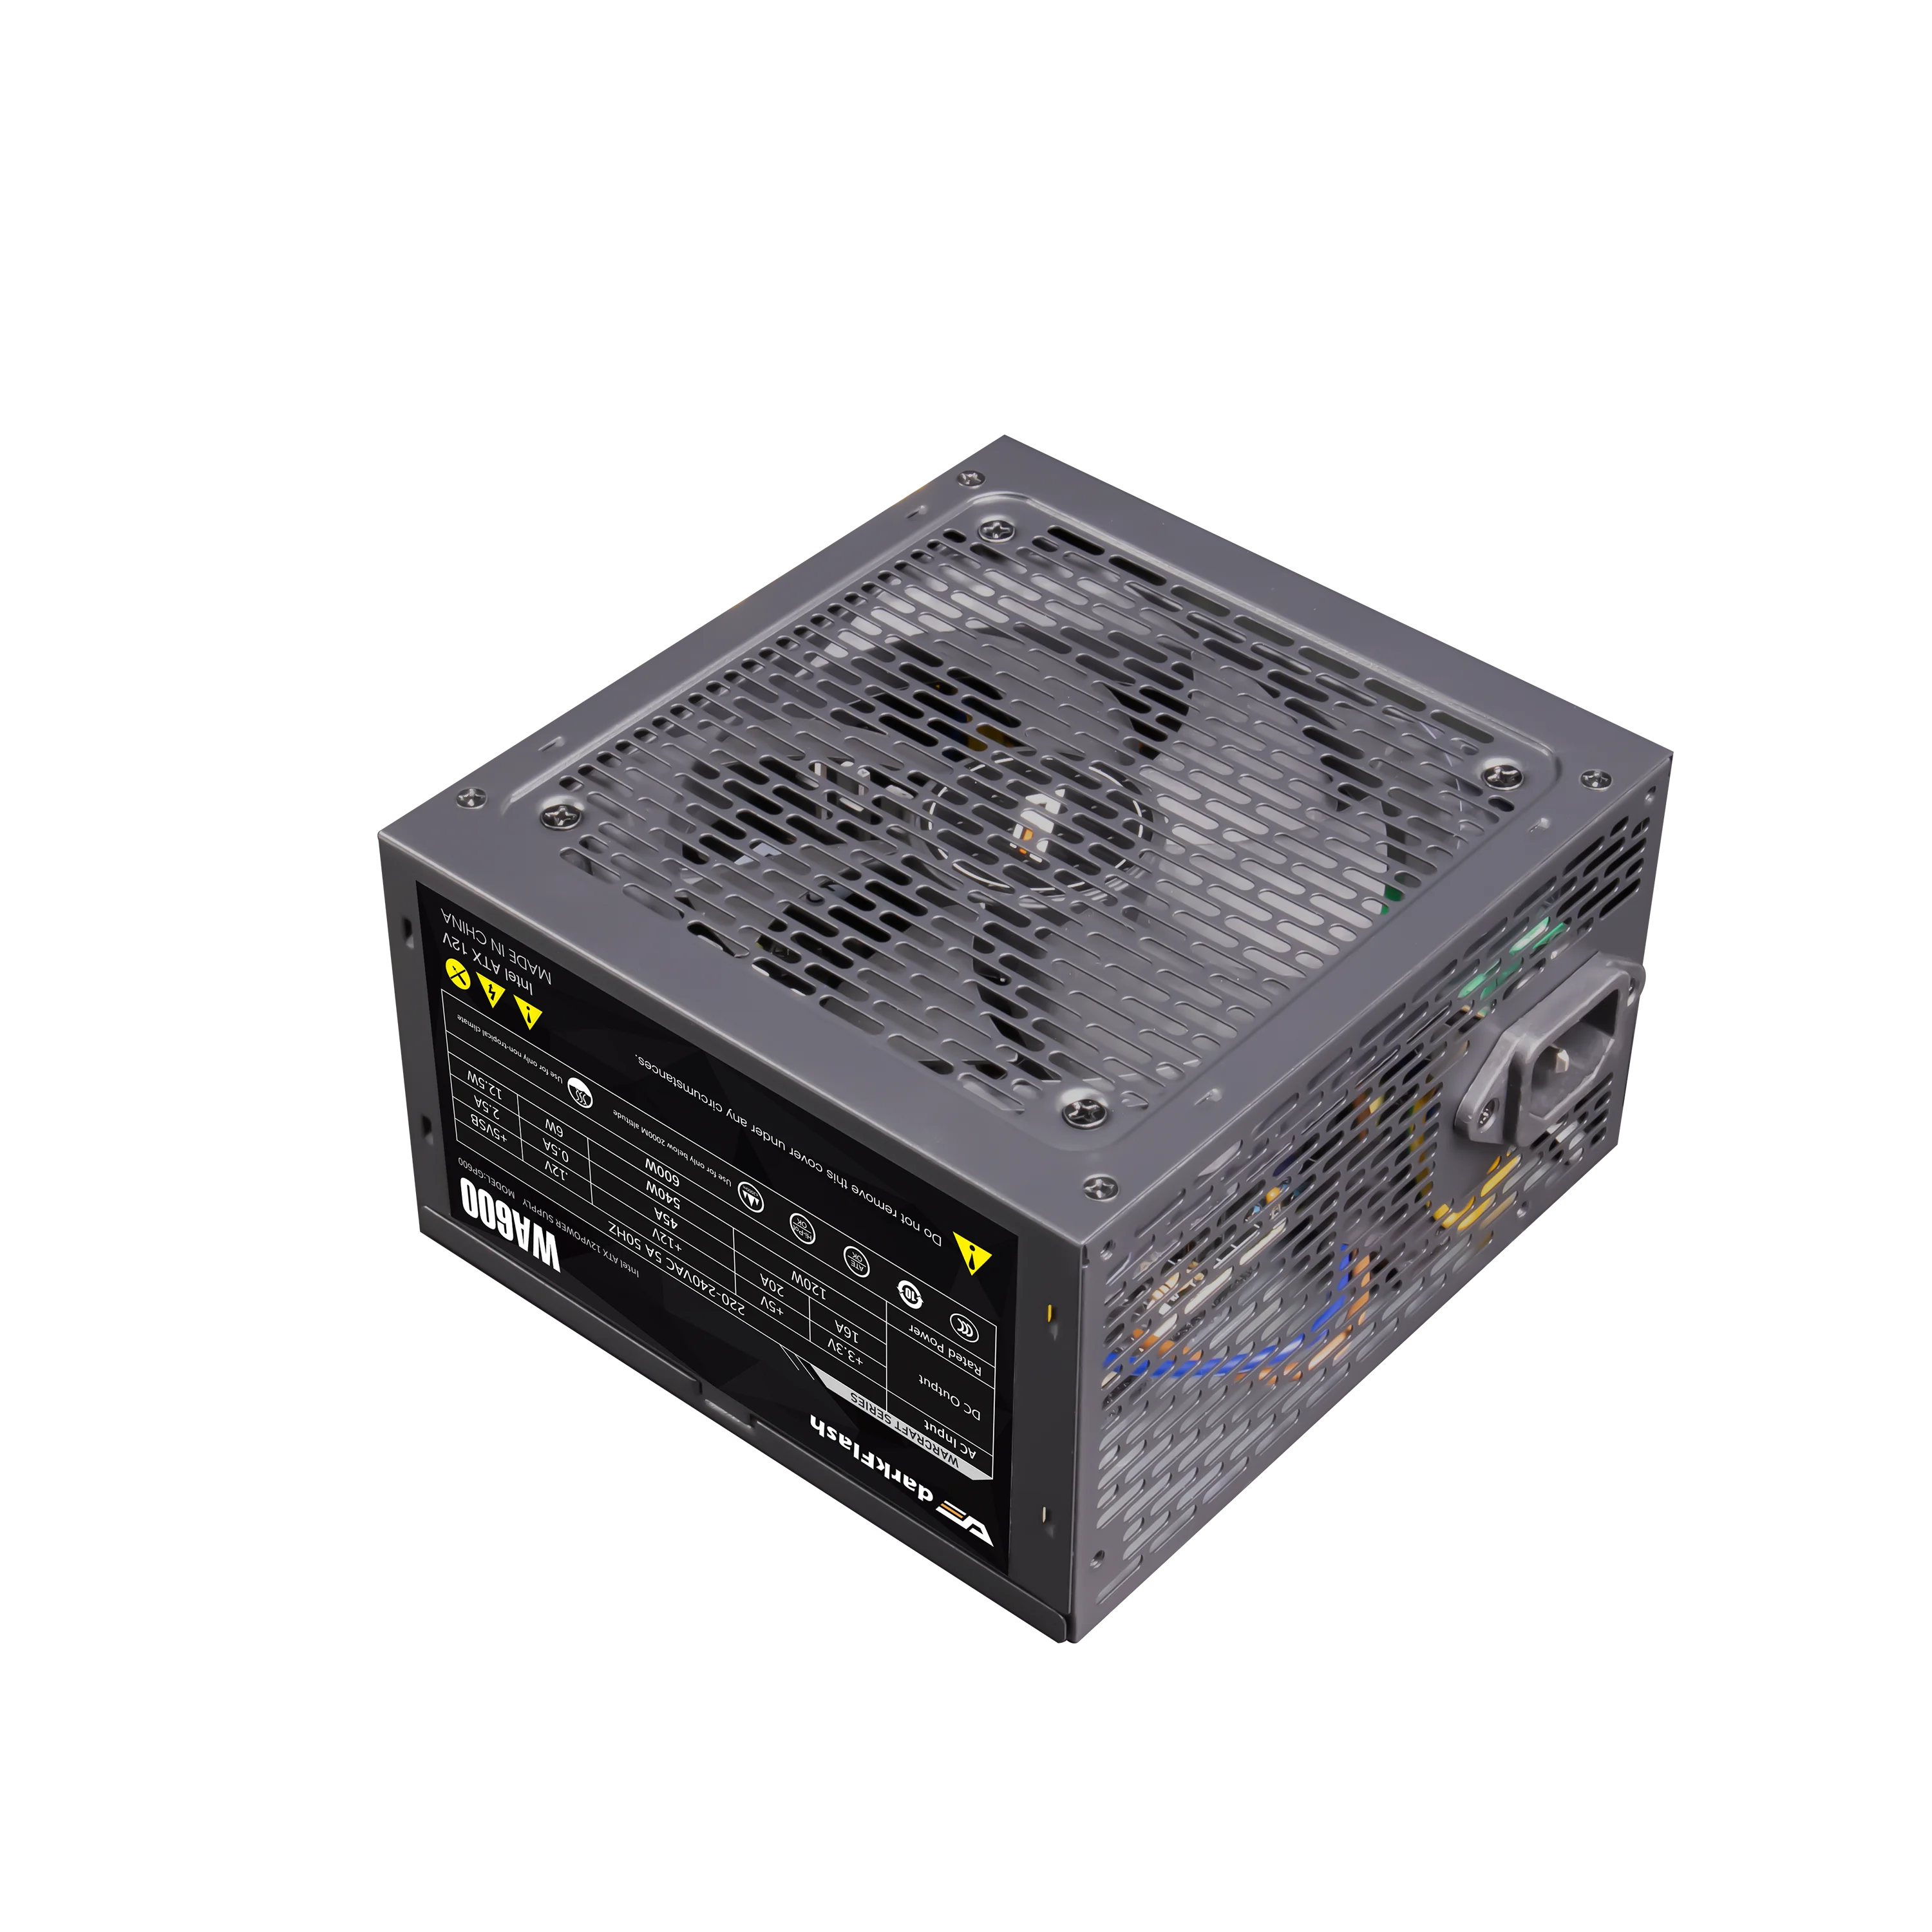 Блок питания Darkflash WA600 Max 600 Вт бесшумный вентилятор ATX 24 контакта 12 В - купить по